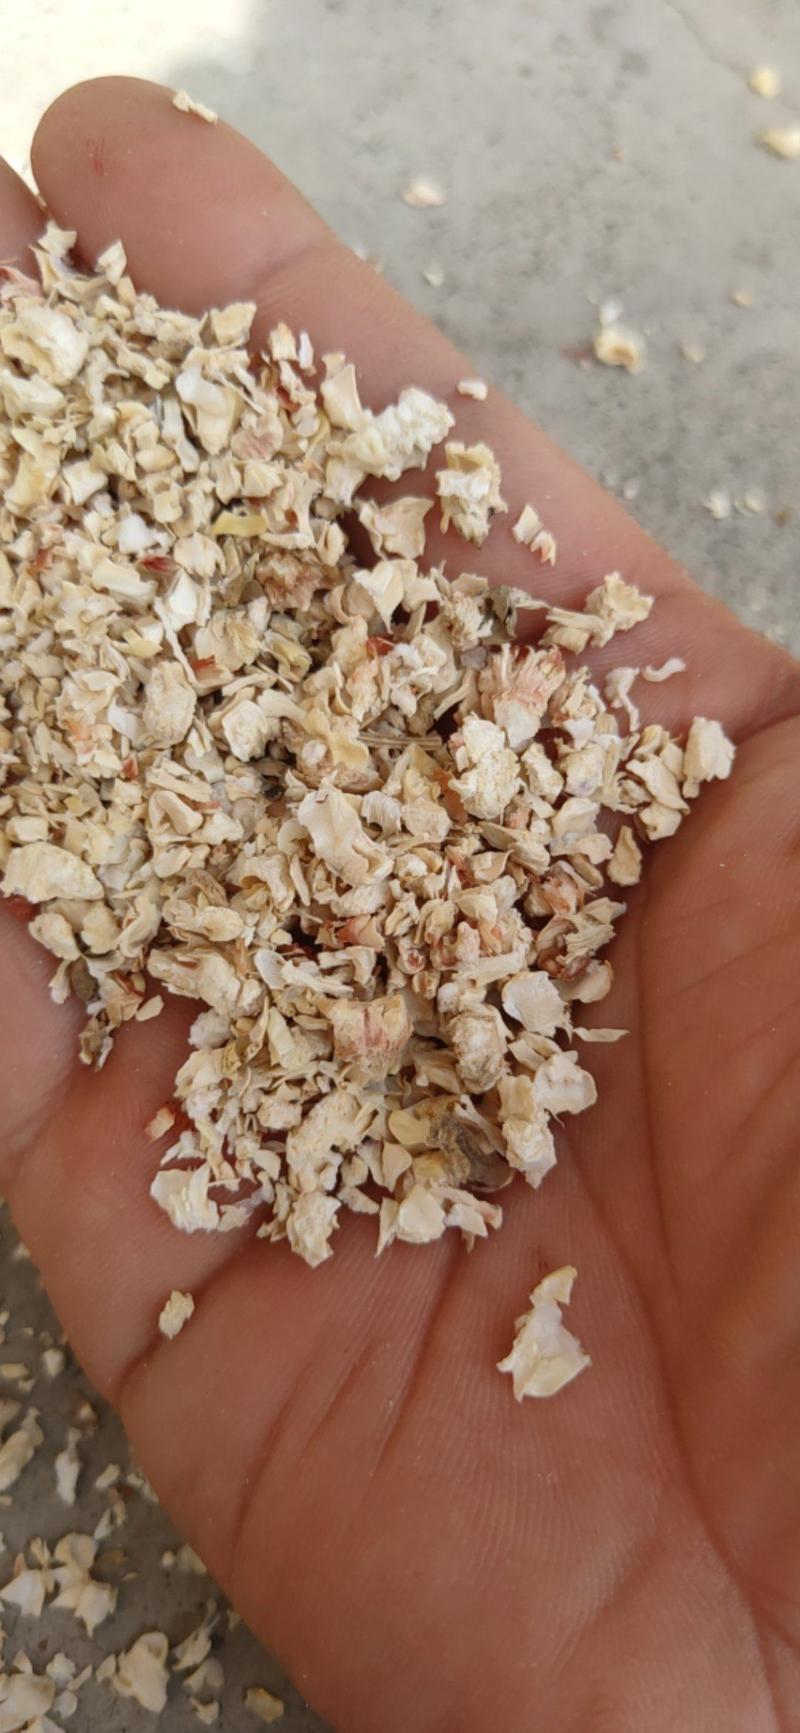 厂家直供精细加工玉米芯玉米棒破碎蘑菇种植有机肥质量保证